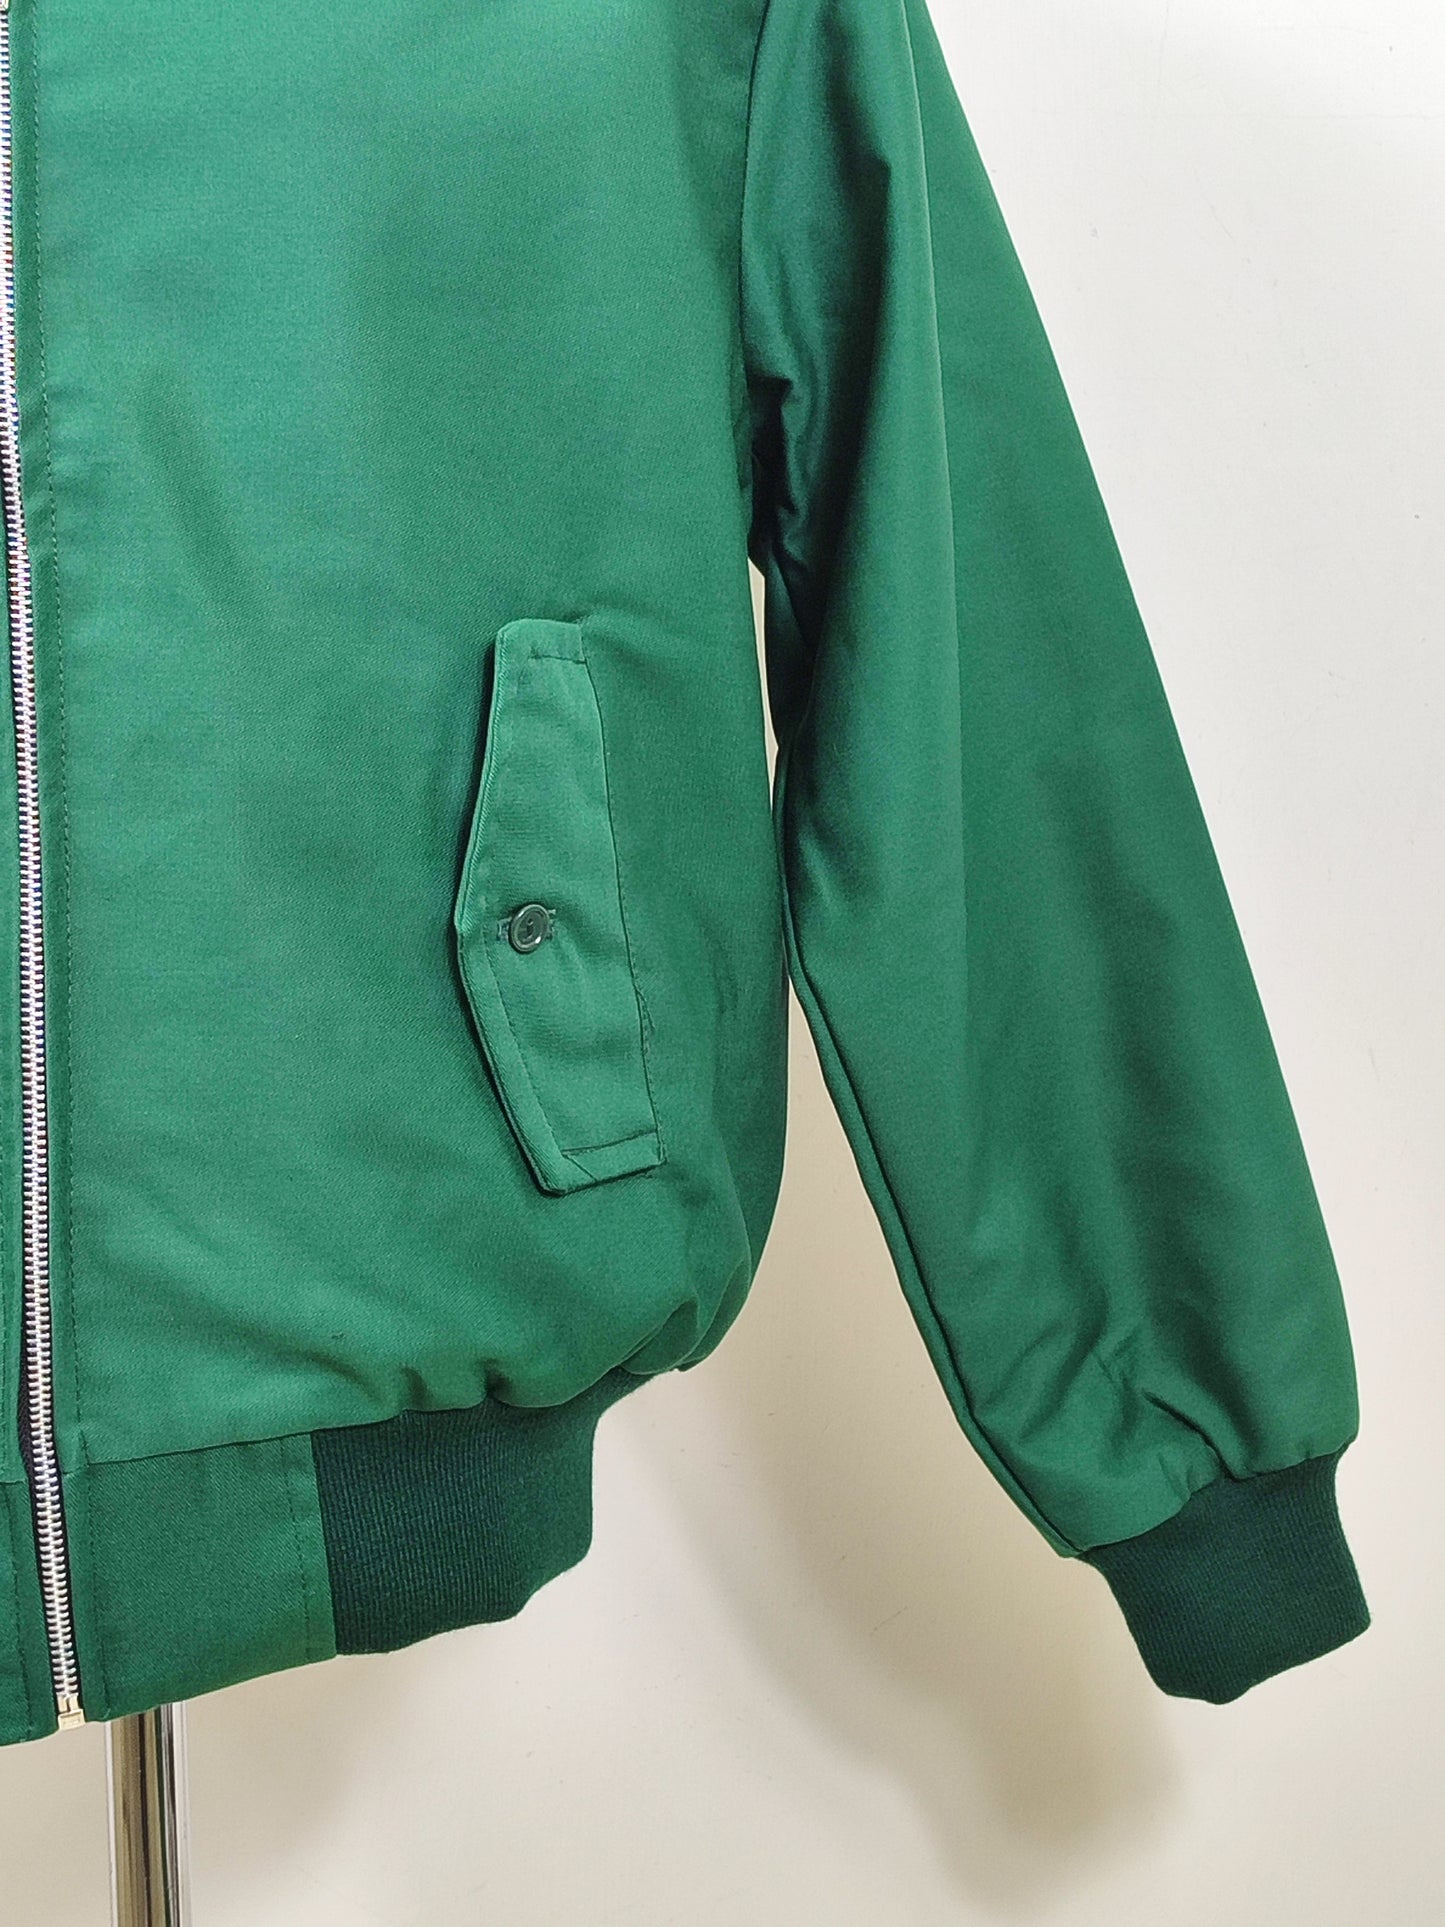 Giacca Harrington verde da uomo in cotone  Made in England - Man Green Harrington Jacket